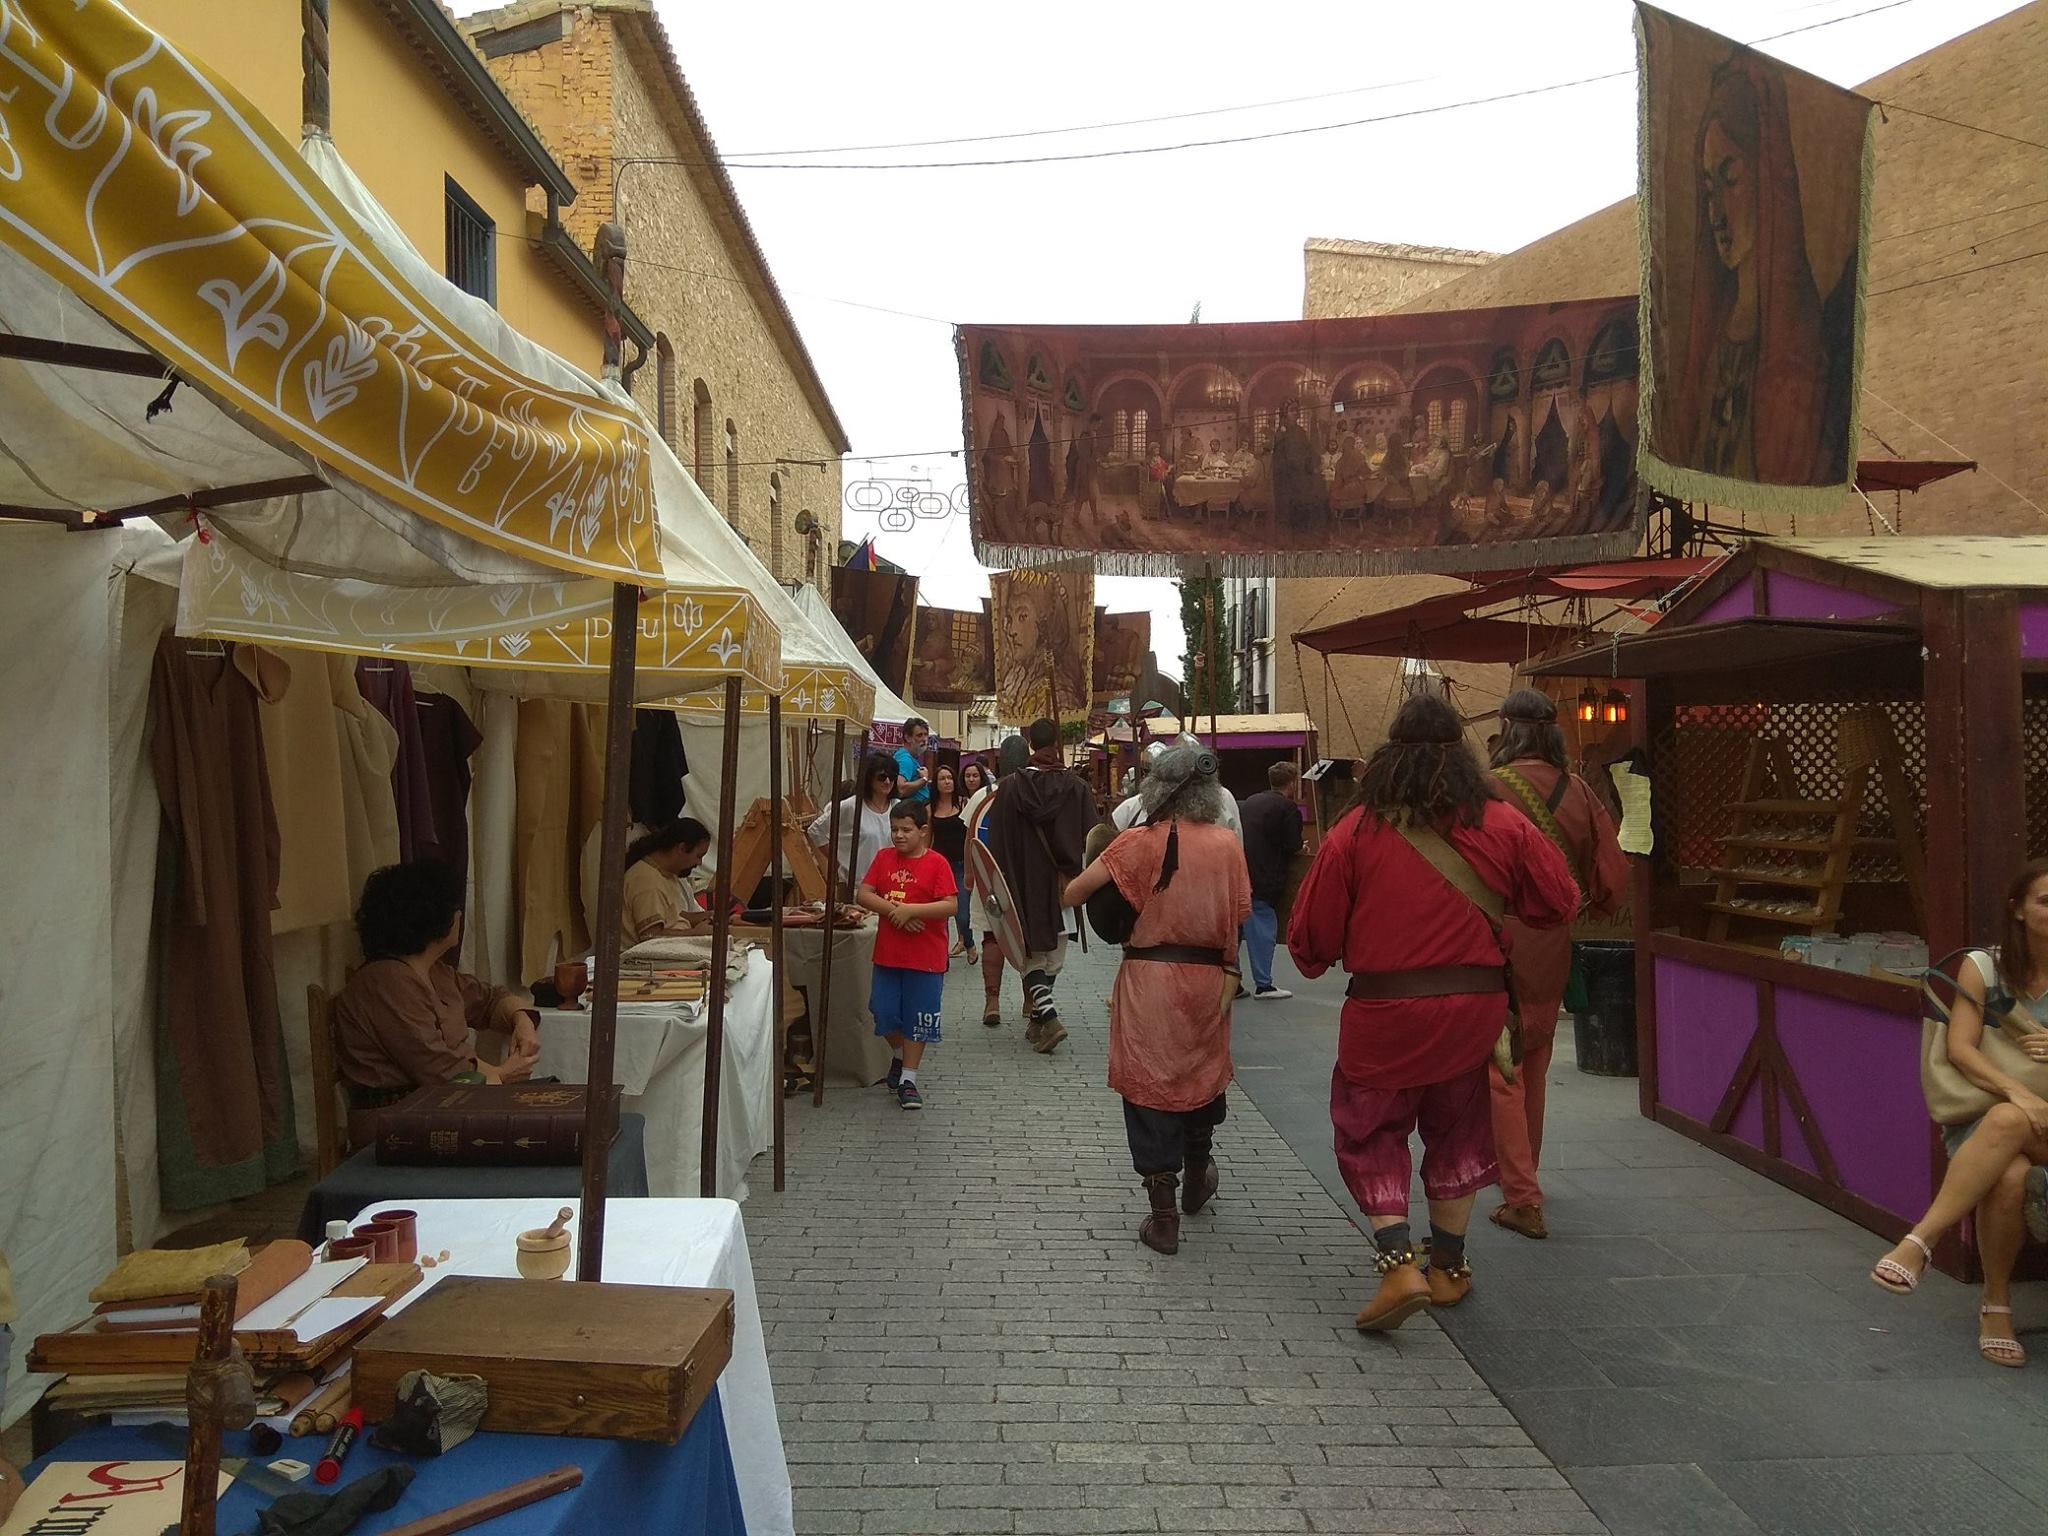 Un mercado visigodo y recreaciones históricas inundan Riba-roja de Túria